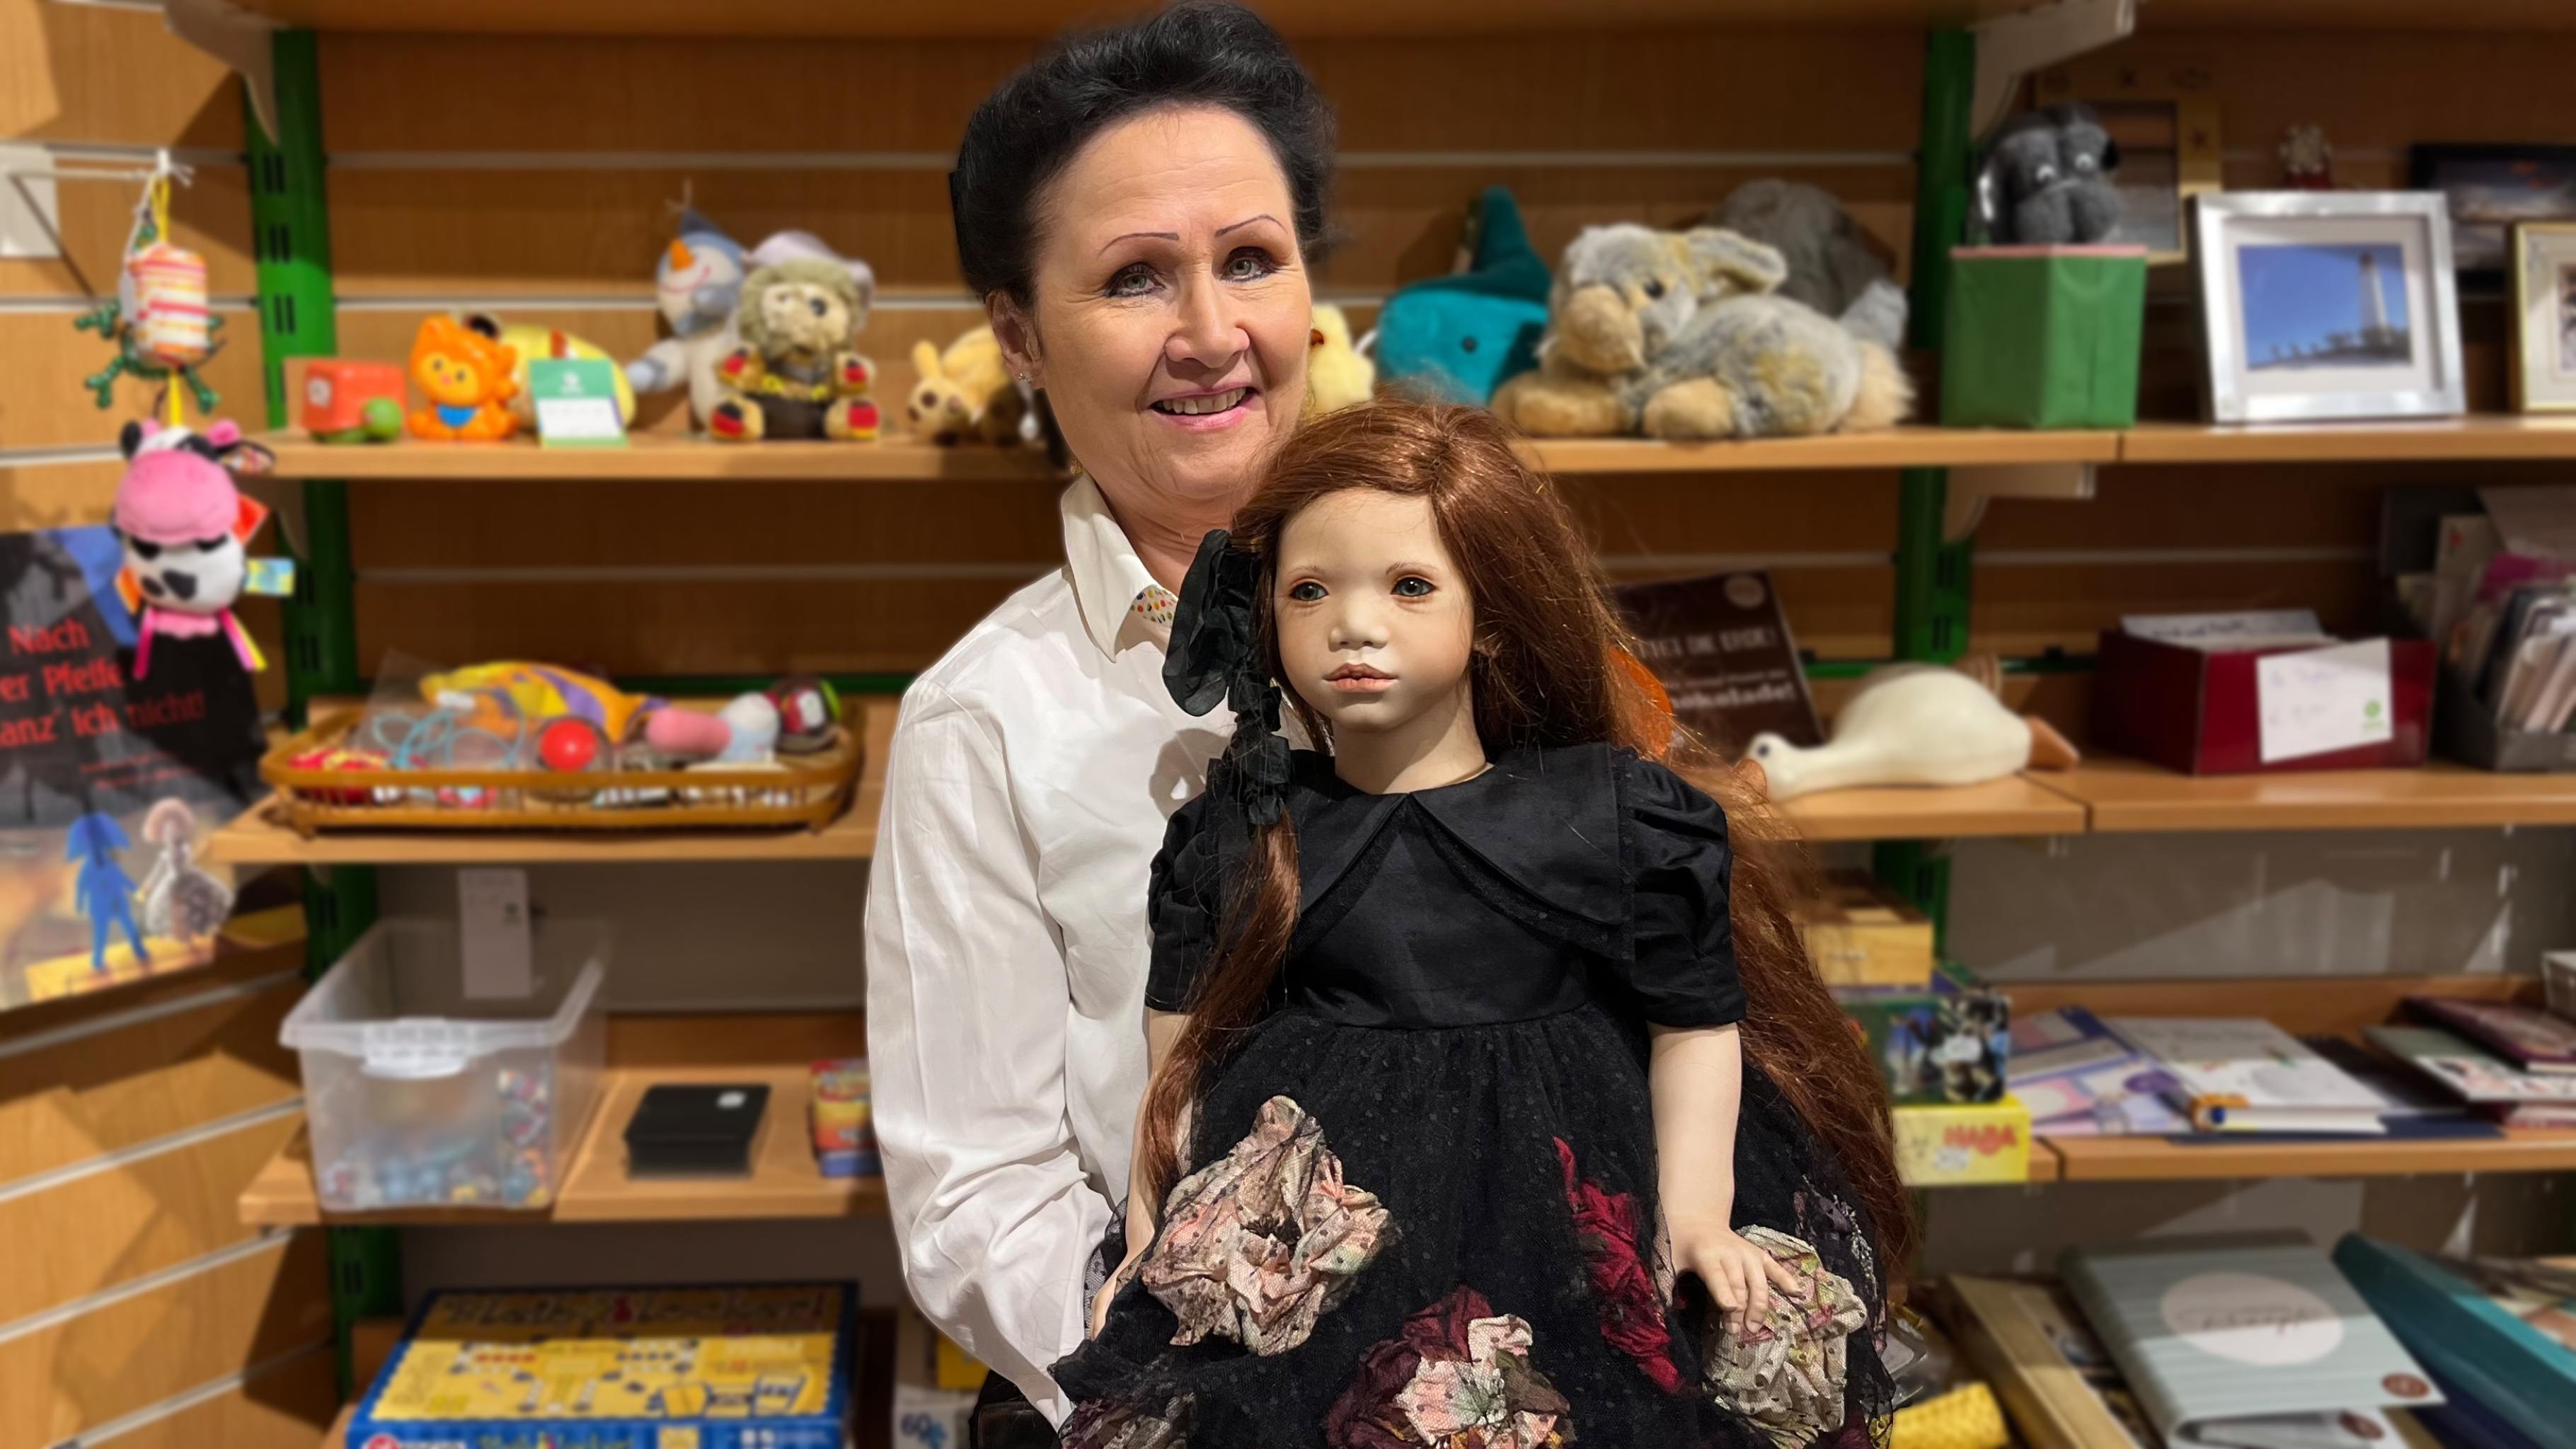 Therese mit Porzellan-Puppen von Annette Himstedt